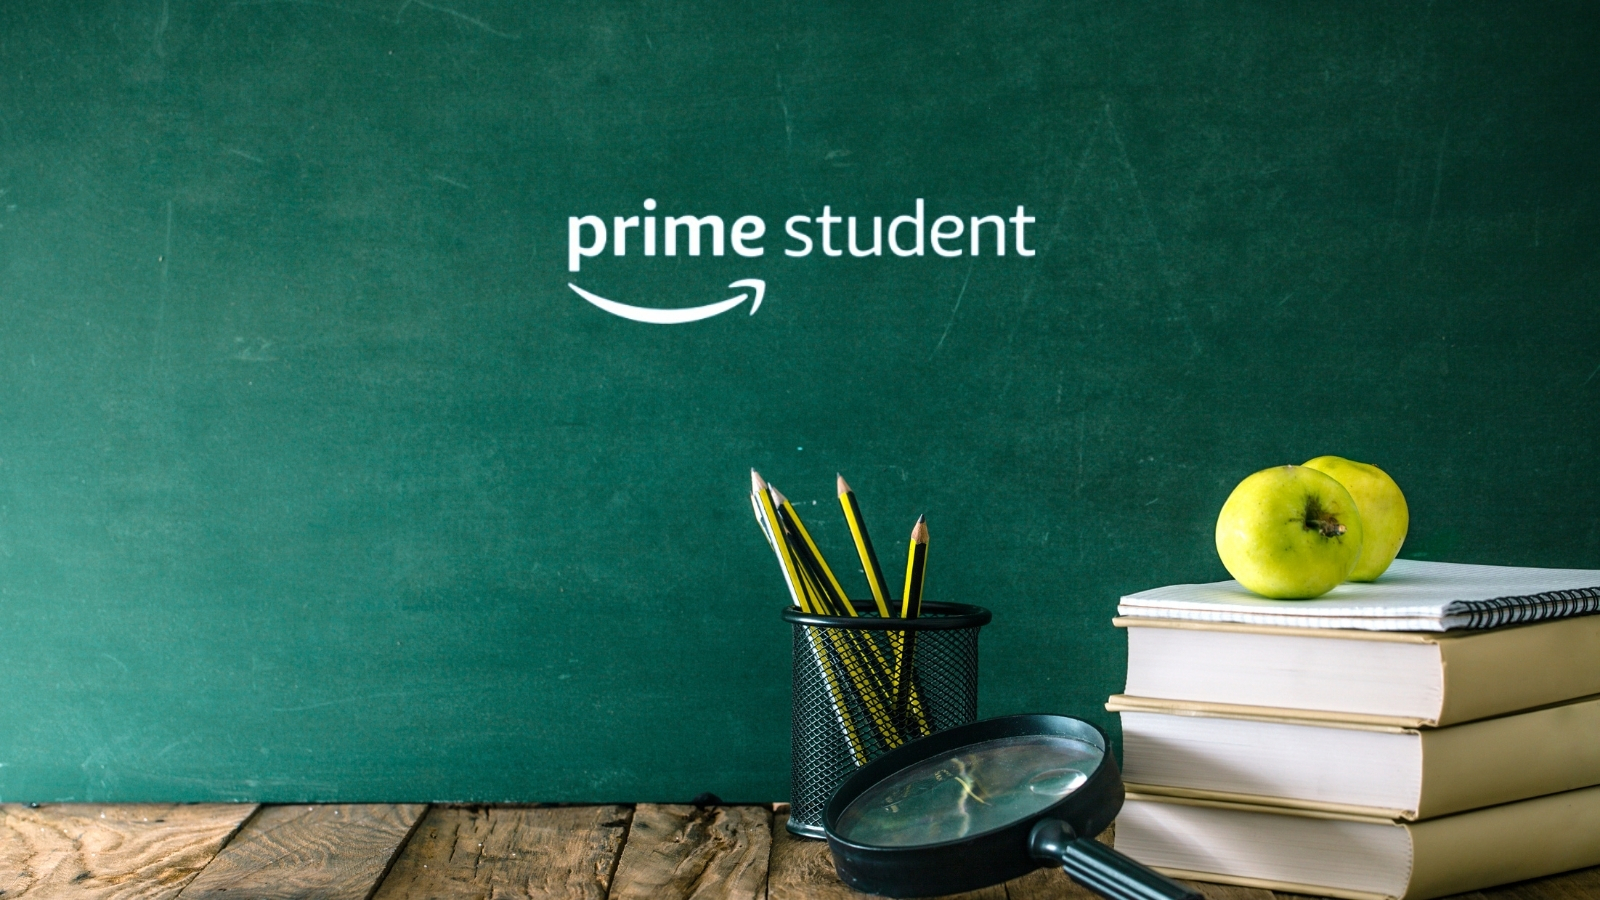 Amazon Prime Student offre 5 euro ai nuovi iscritti